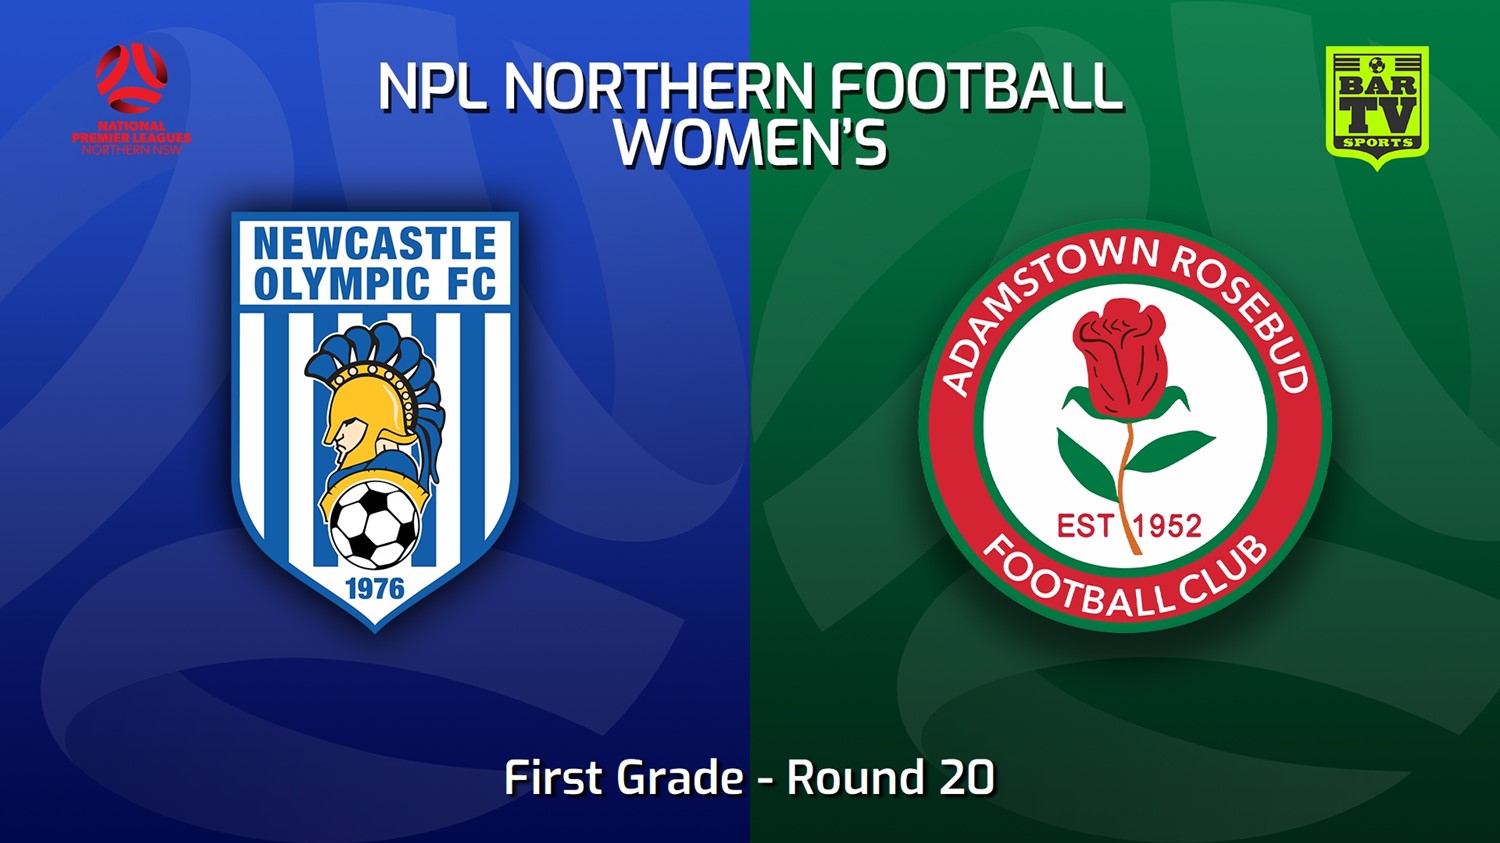 220828-NNSW NPLW Round 20 - Newcastle Olympic FC W v Adamstown Rosebud JFC W Minigame Slate Image